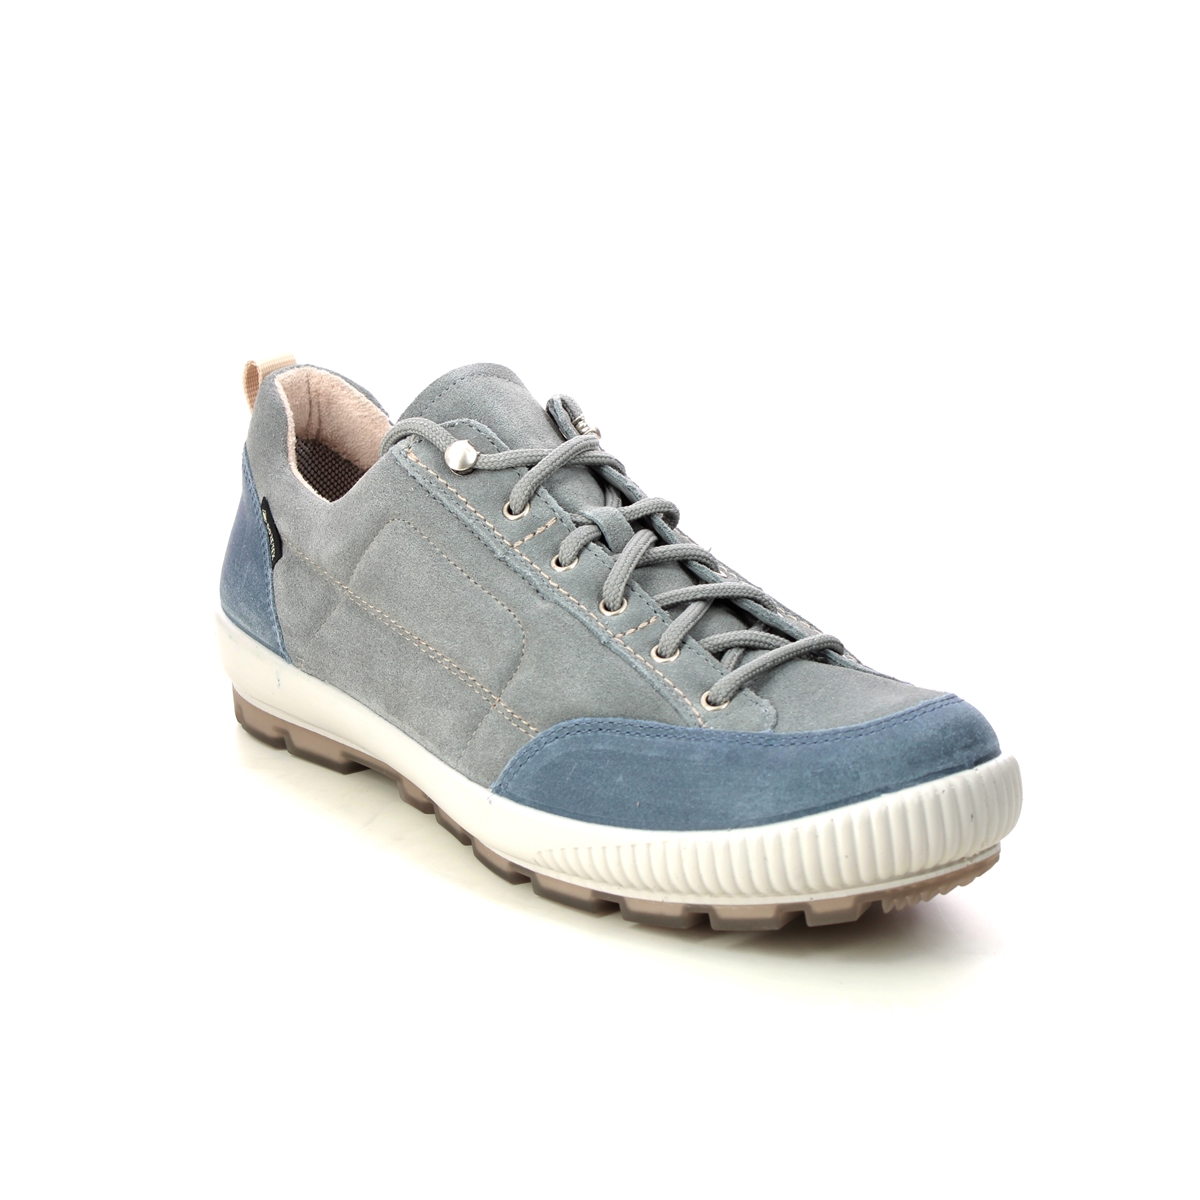 Legero Tanaro Trek Gtx Blue Grey Womens Walking Shoes 2000210-2410 in a Plain Leather in Size 6.5